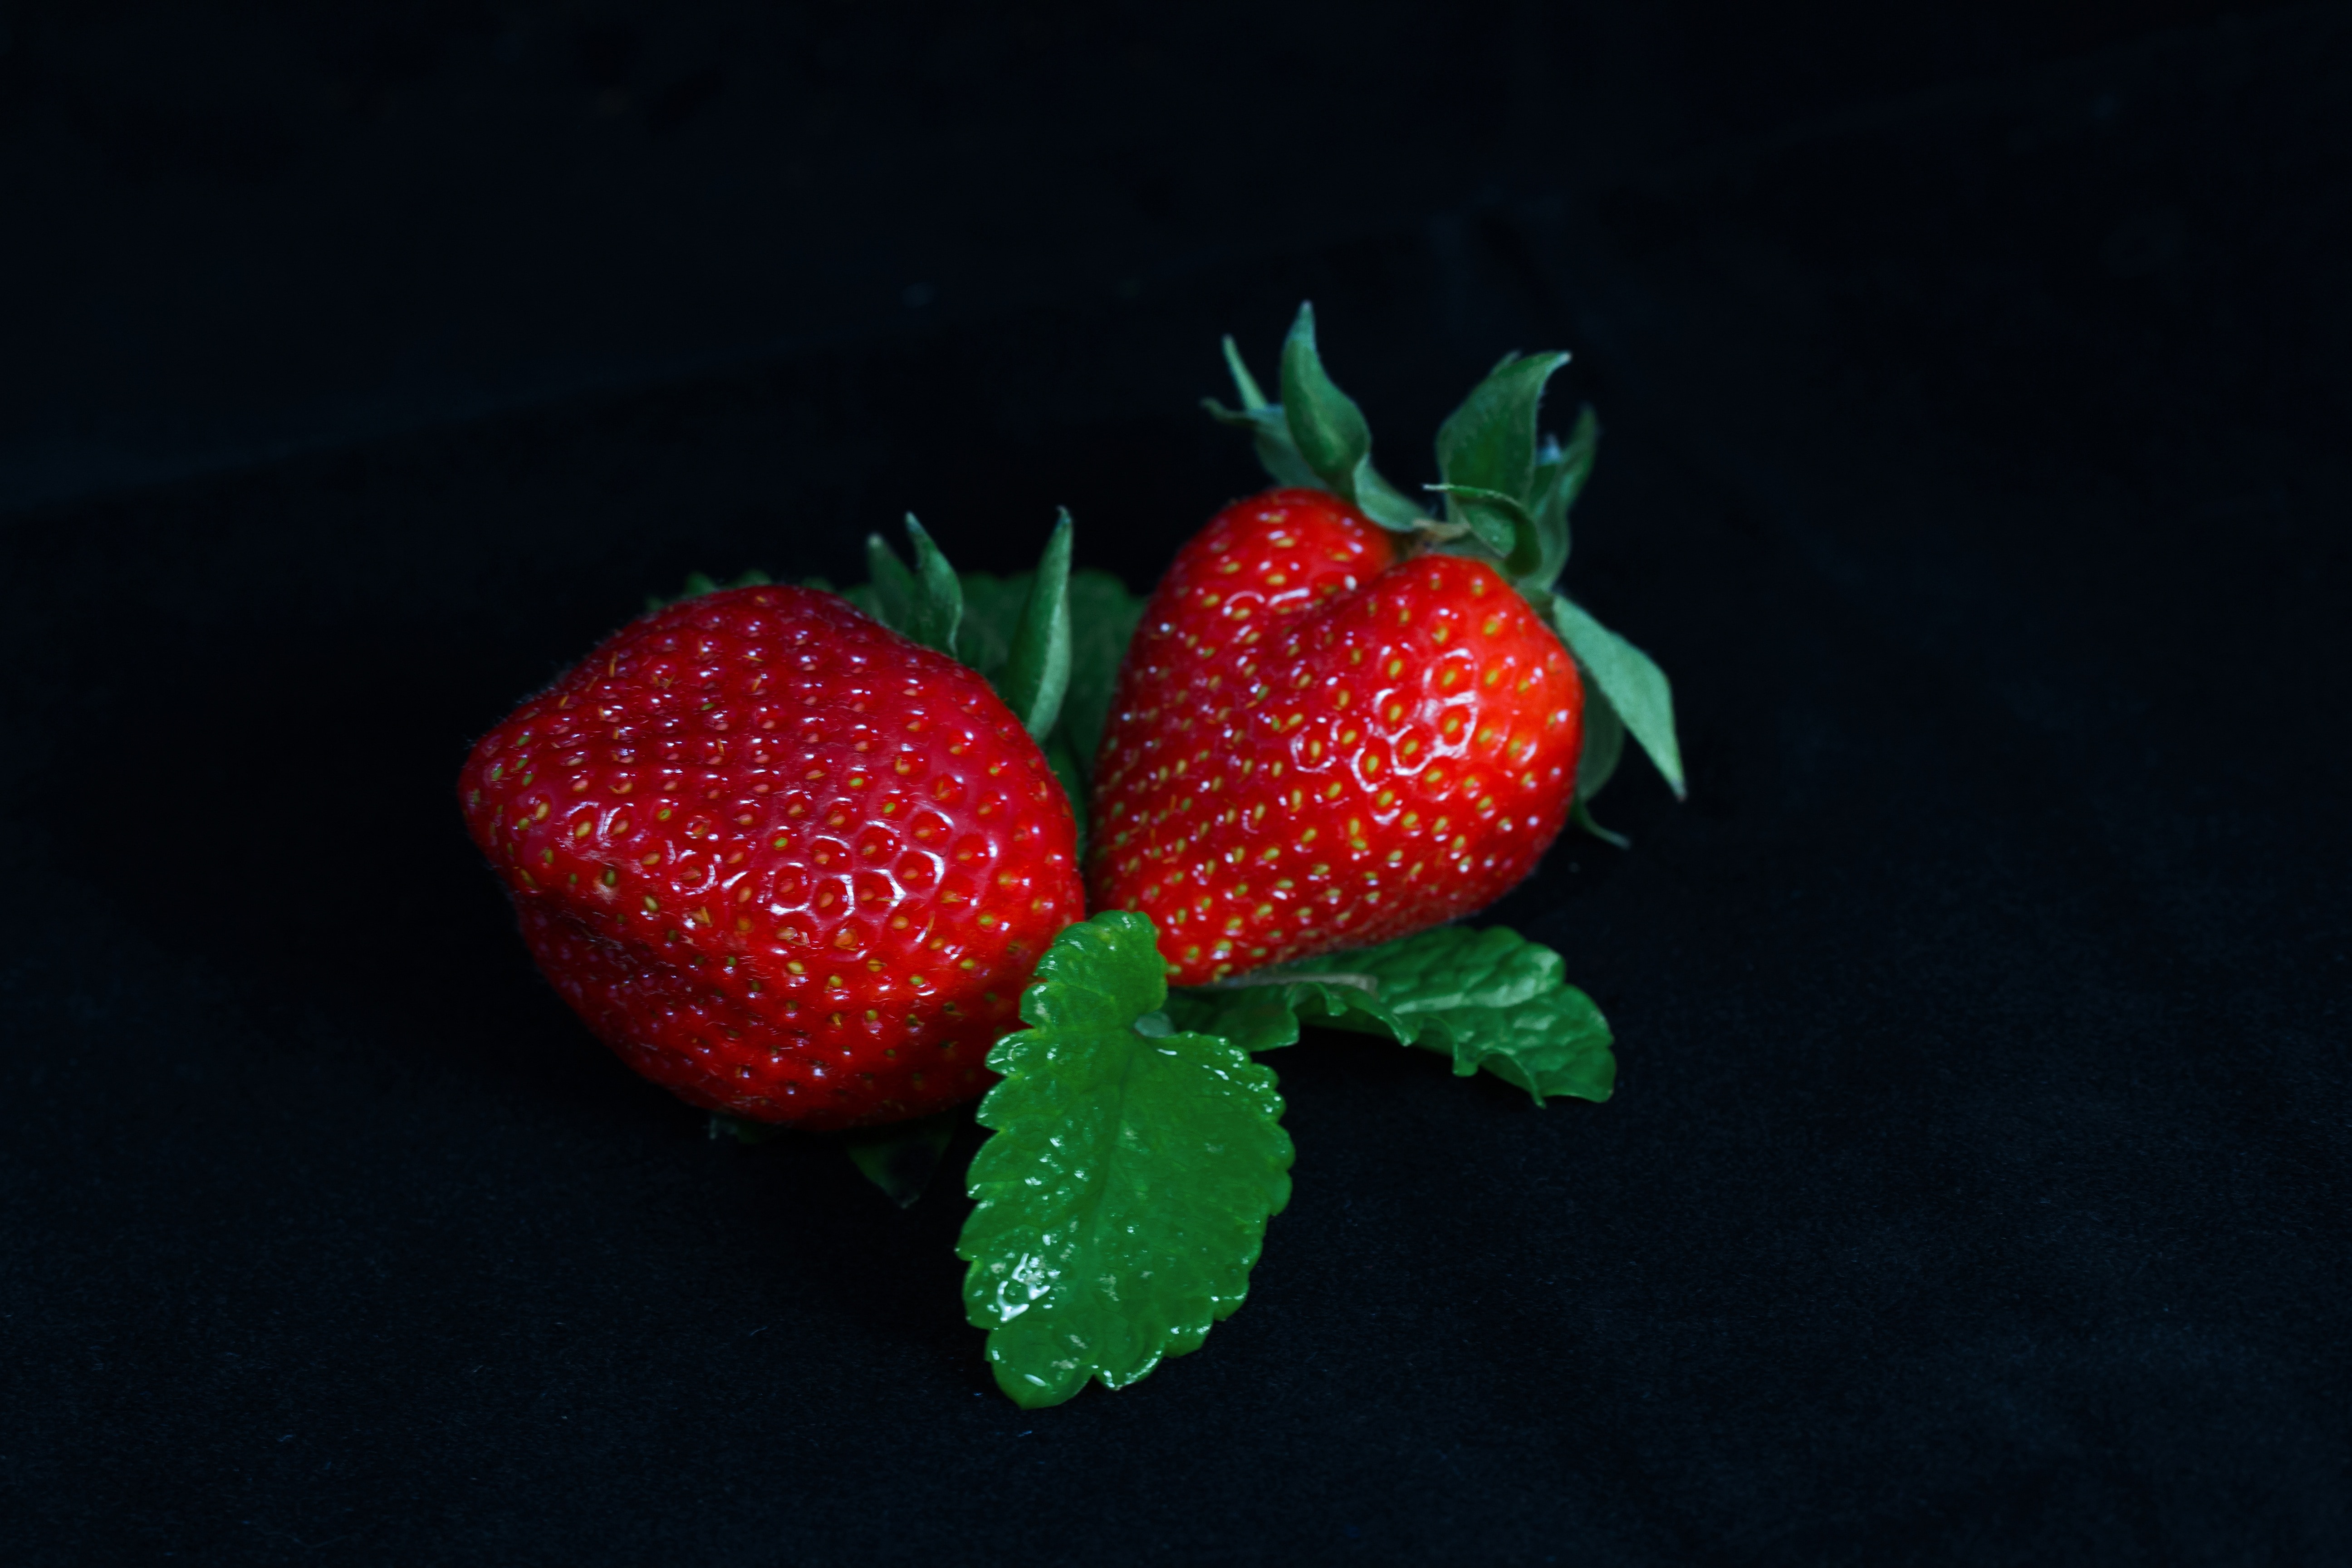 2 strawberries